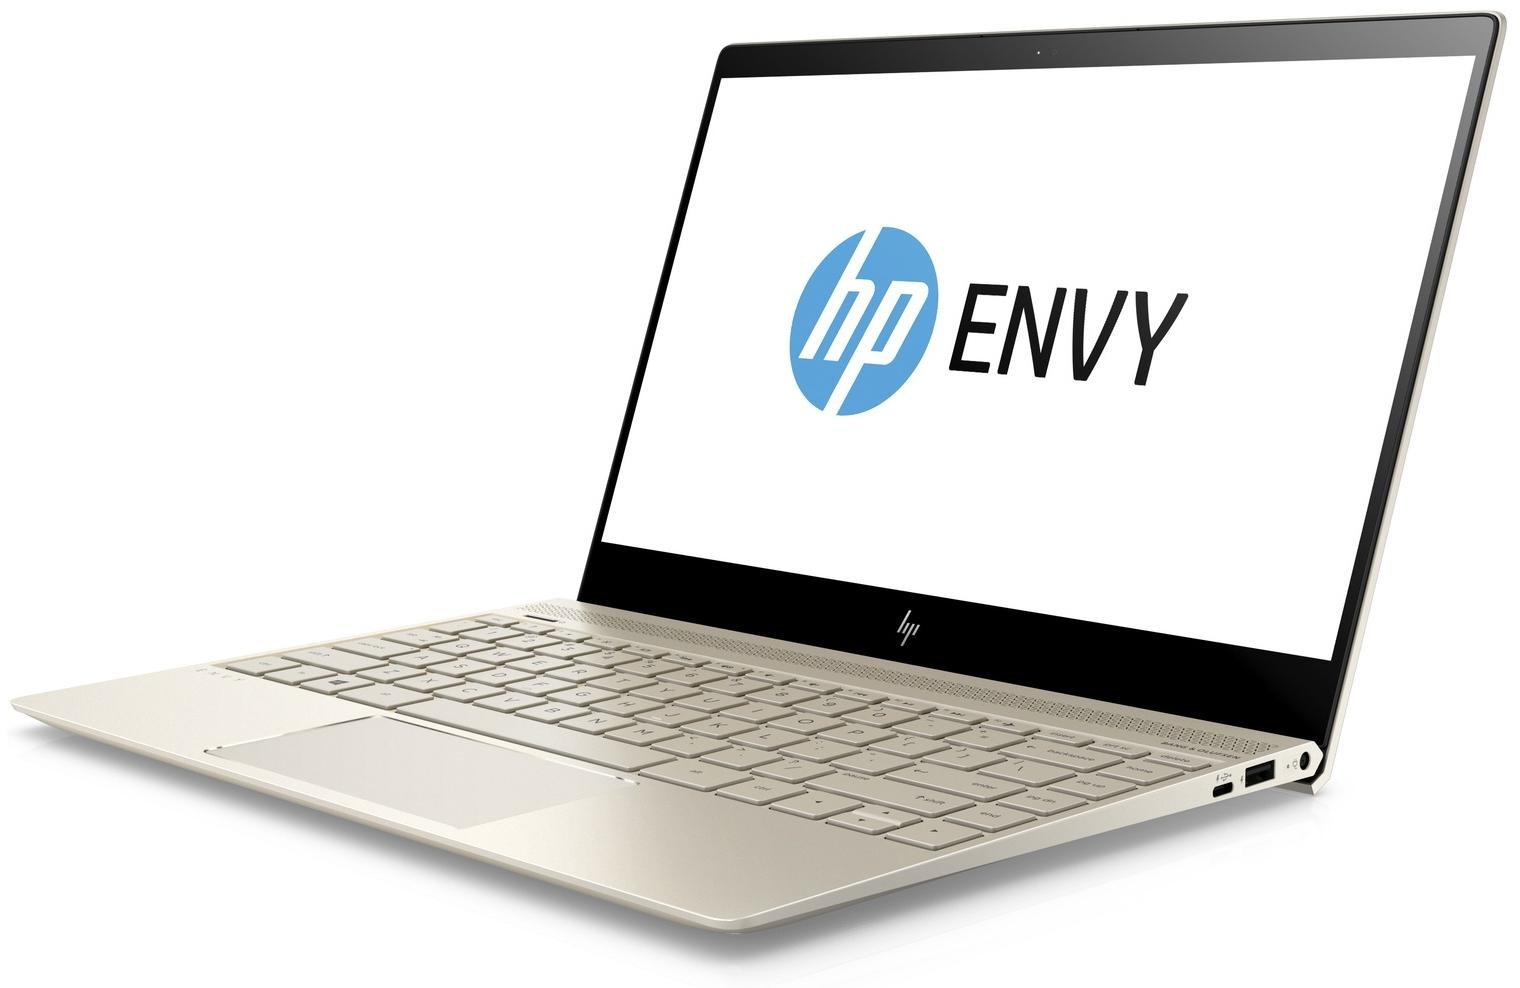  HP Envy 13-ad009ur 1WS55EA  #1